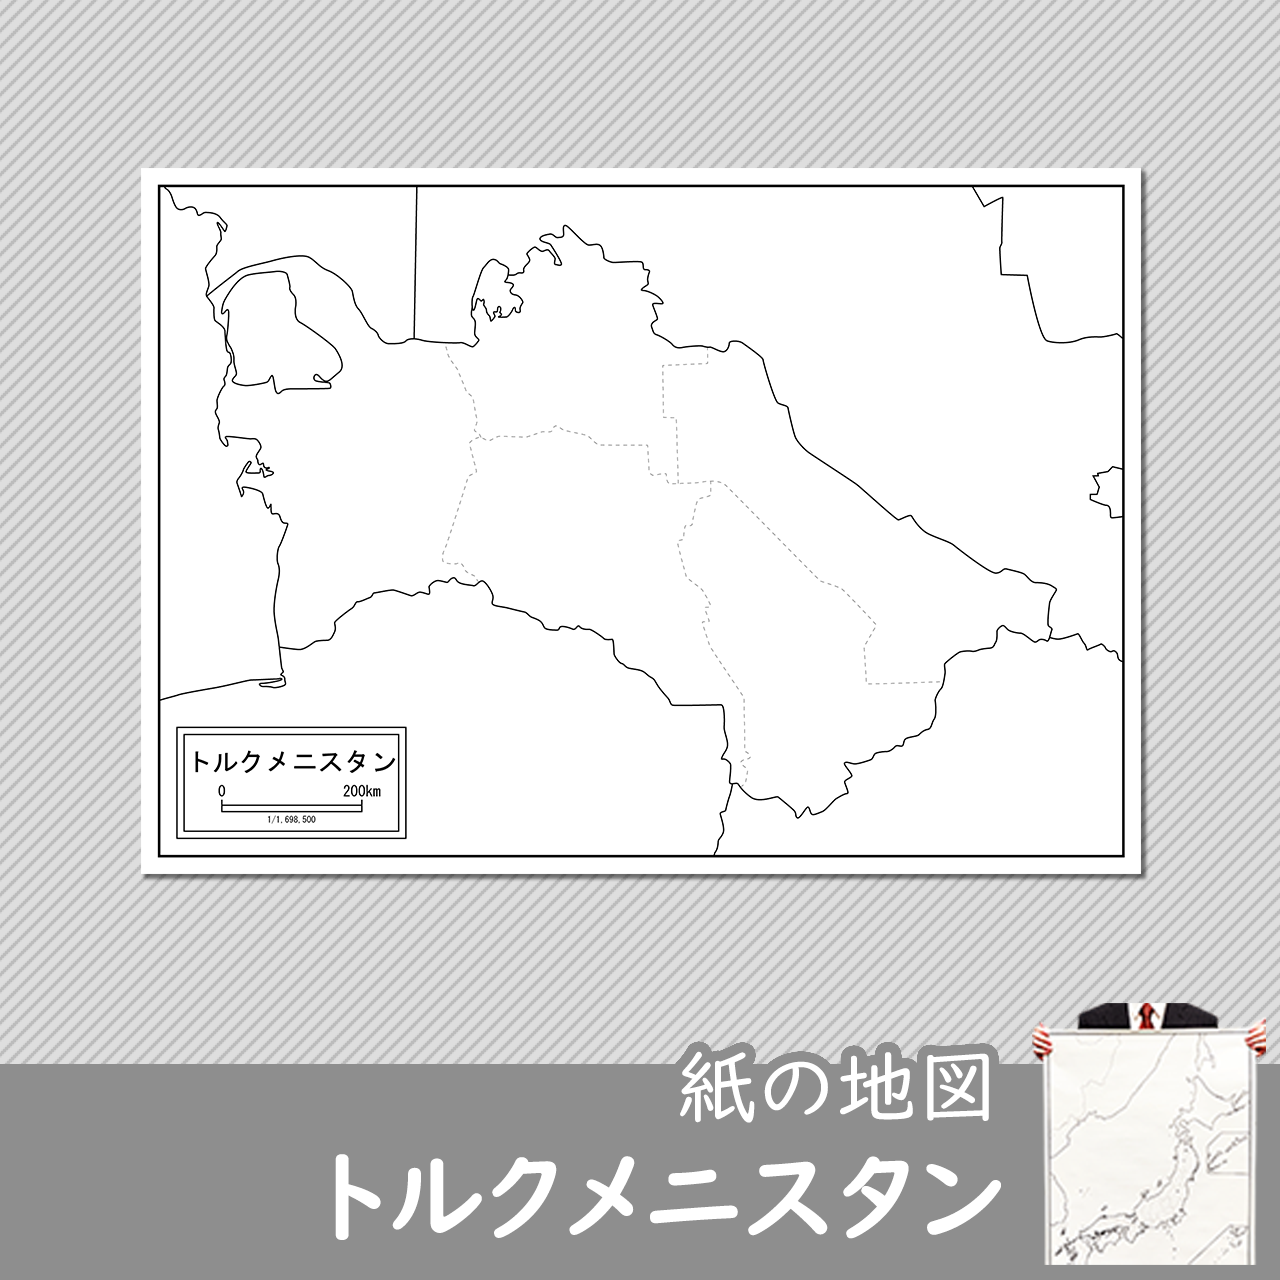 トルクメニスタンの紙の白地図